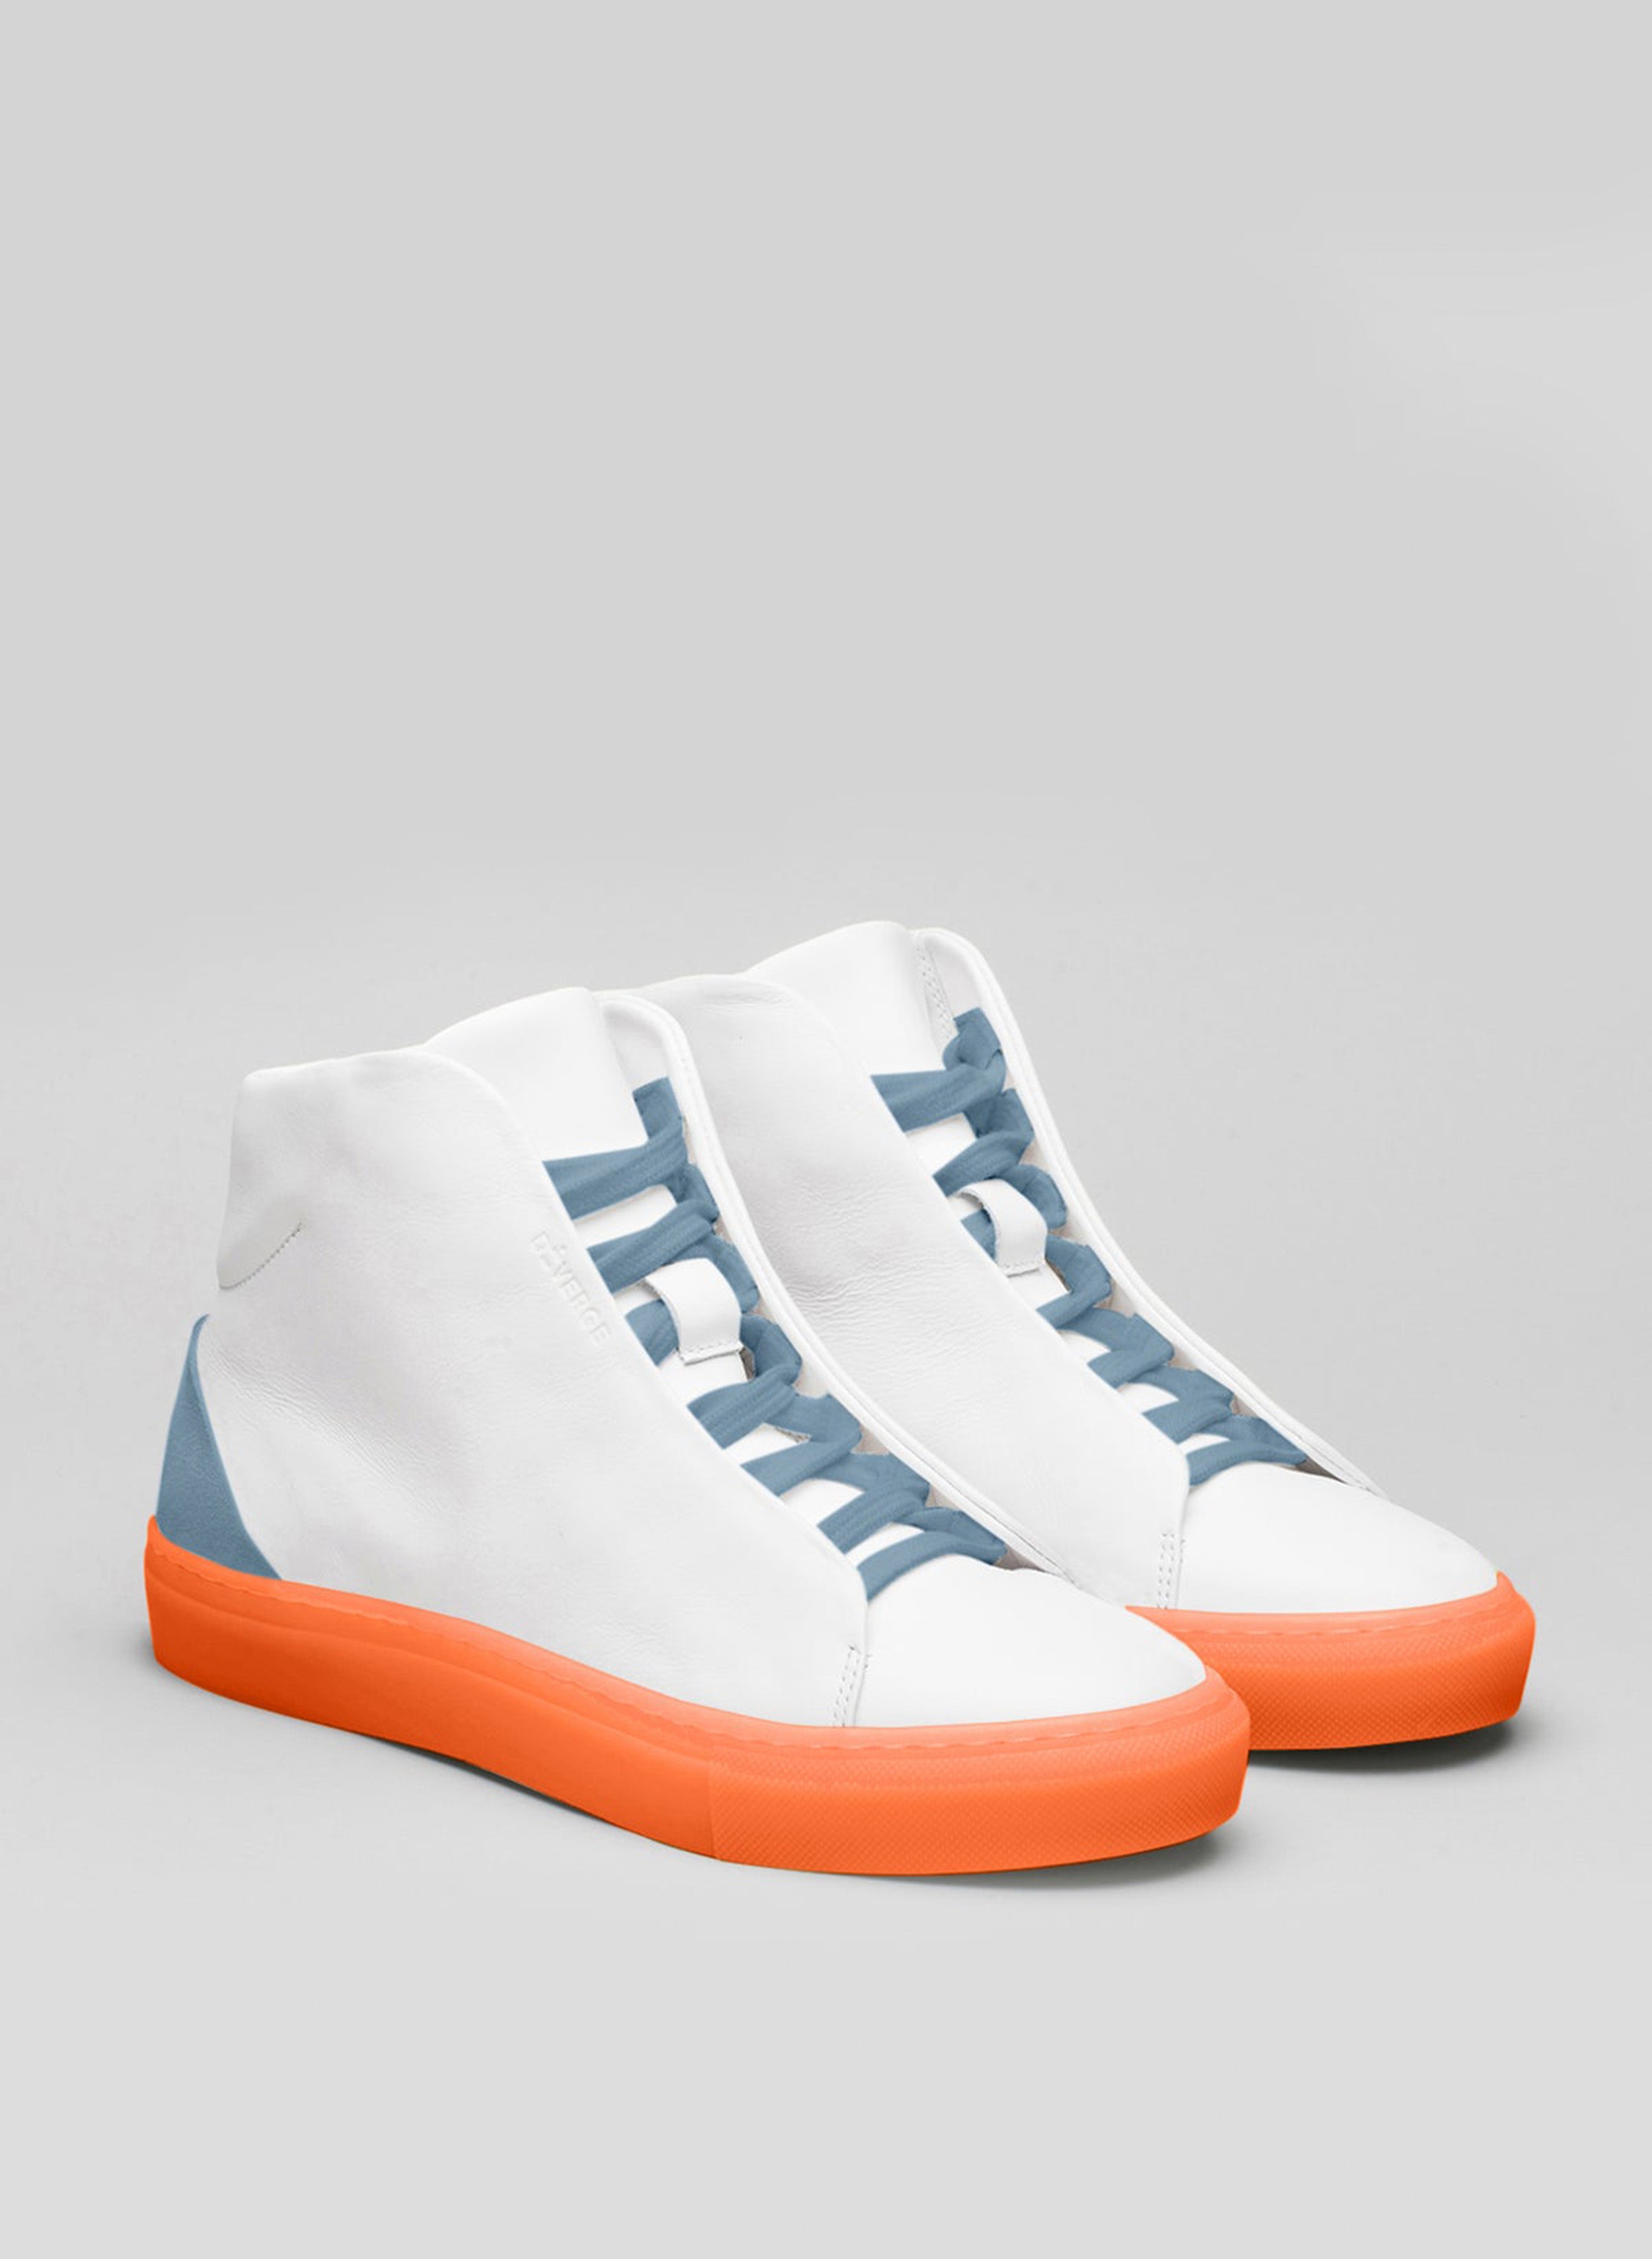 Ein Paar weiße High-Top-Schuhe sneakers mit blauen Schnürsenkeln und orangefarbener Sohle, die von Diverge präsentiert werden.